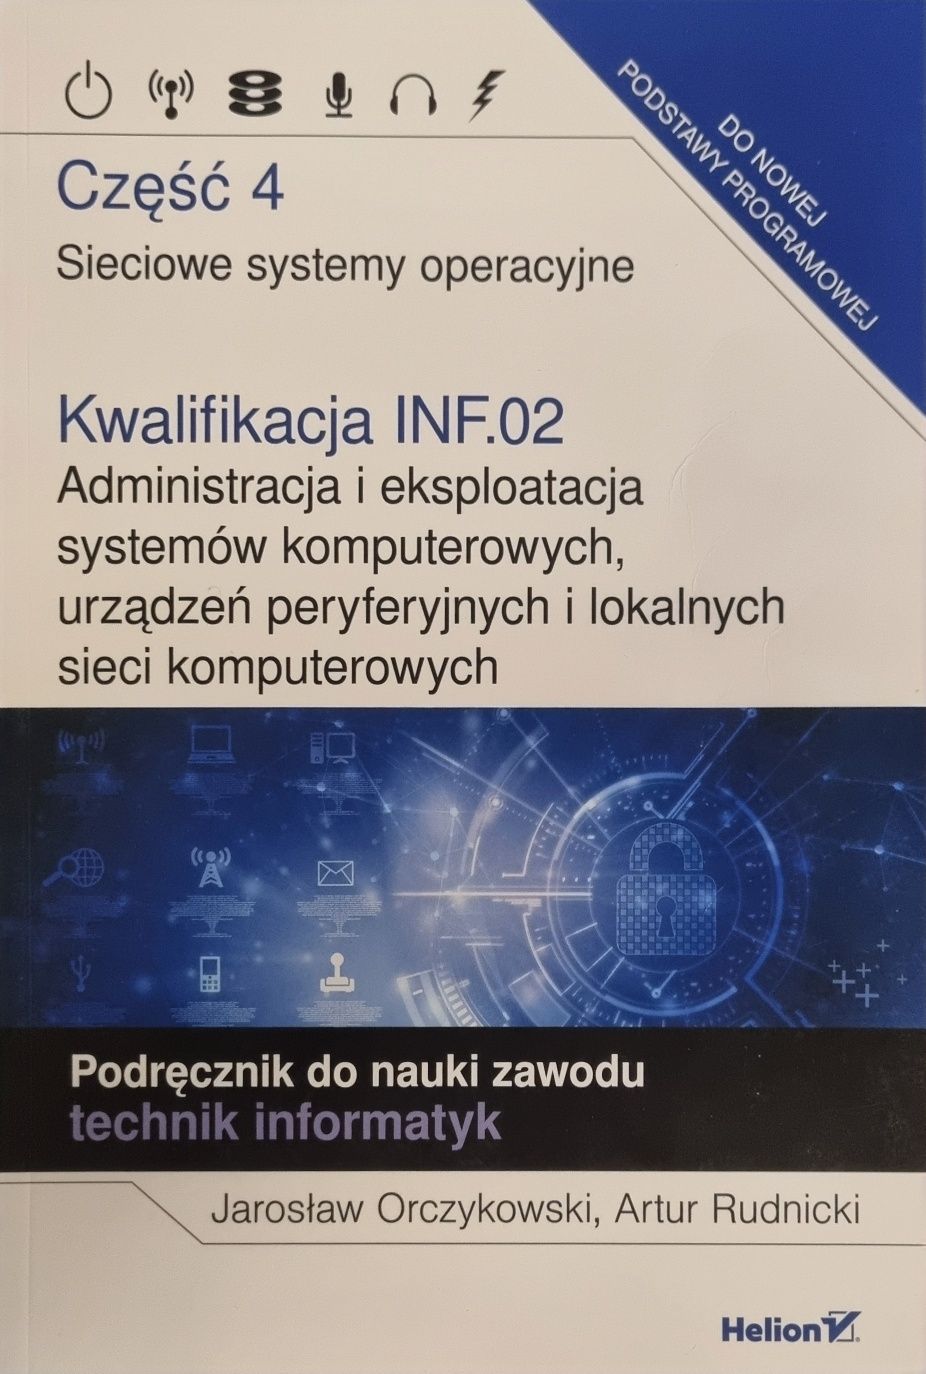 Sieciowe systemy operacyjne. Kwalifikacja INF.02. Podręcznik